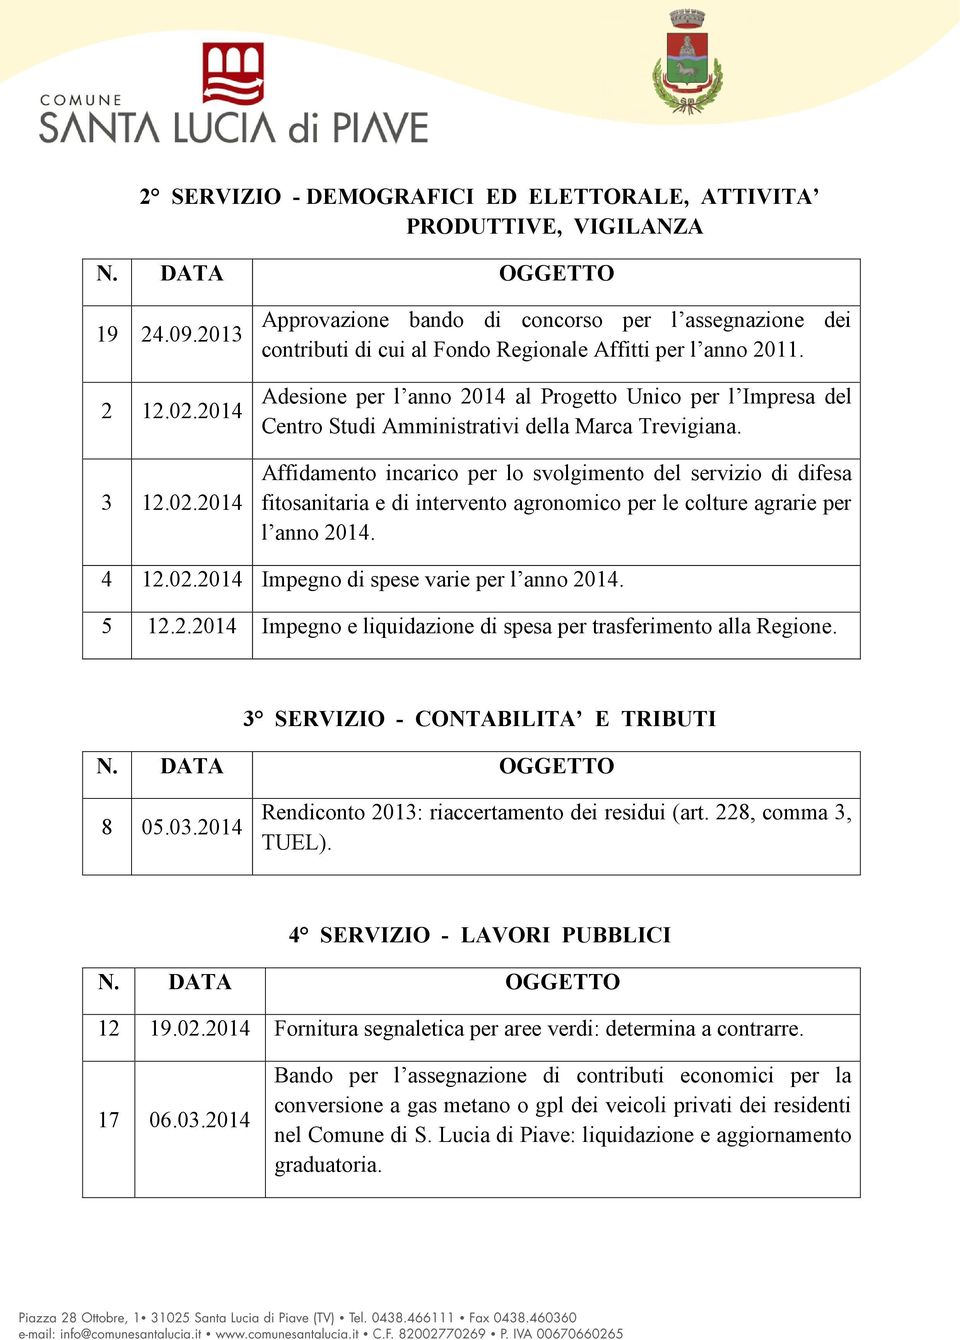 Adesione per l anno 2014 al Progetto Unico per l Impresa del Centro Studi Amministrativi della Marca Trevigiana.